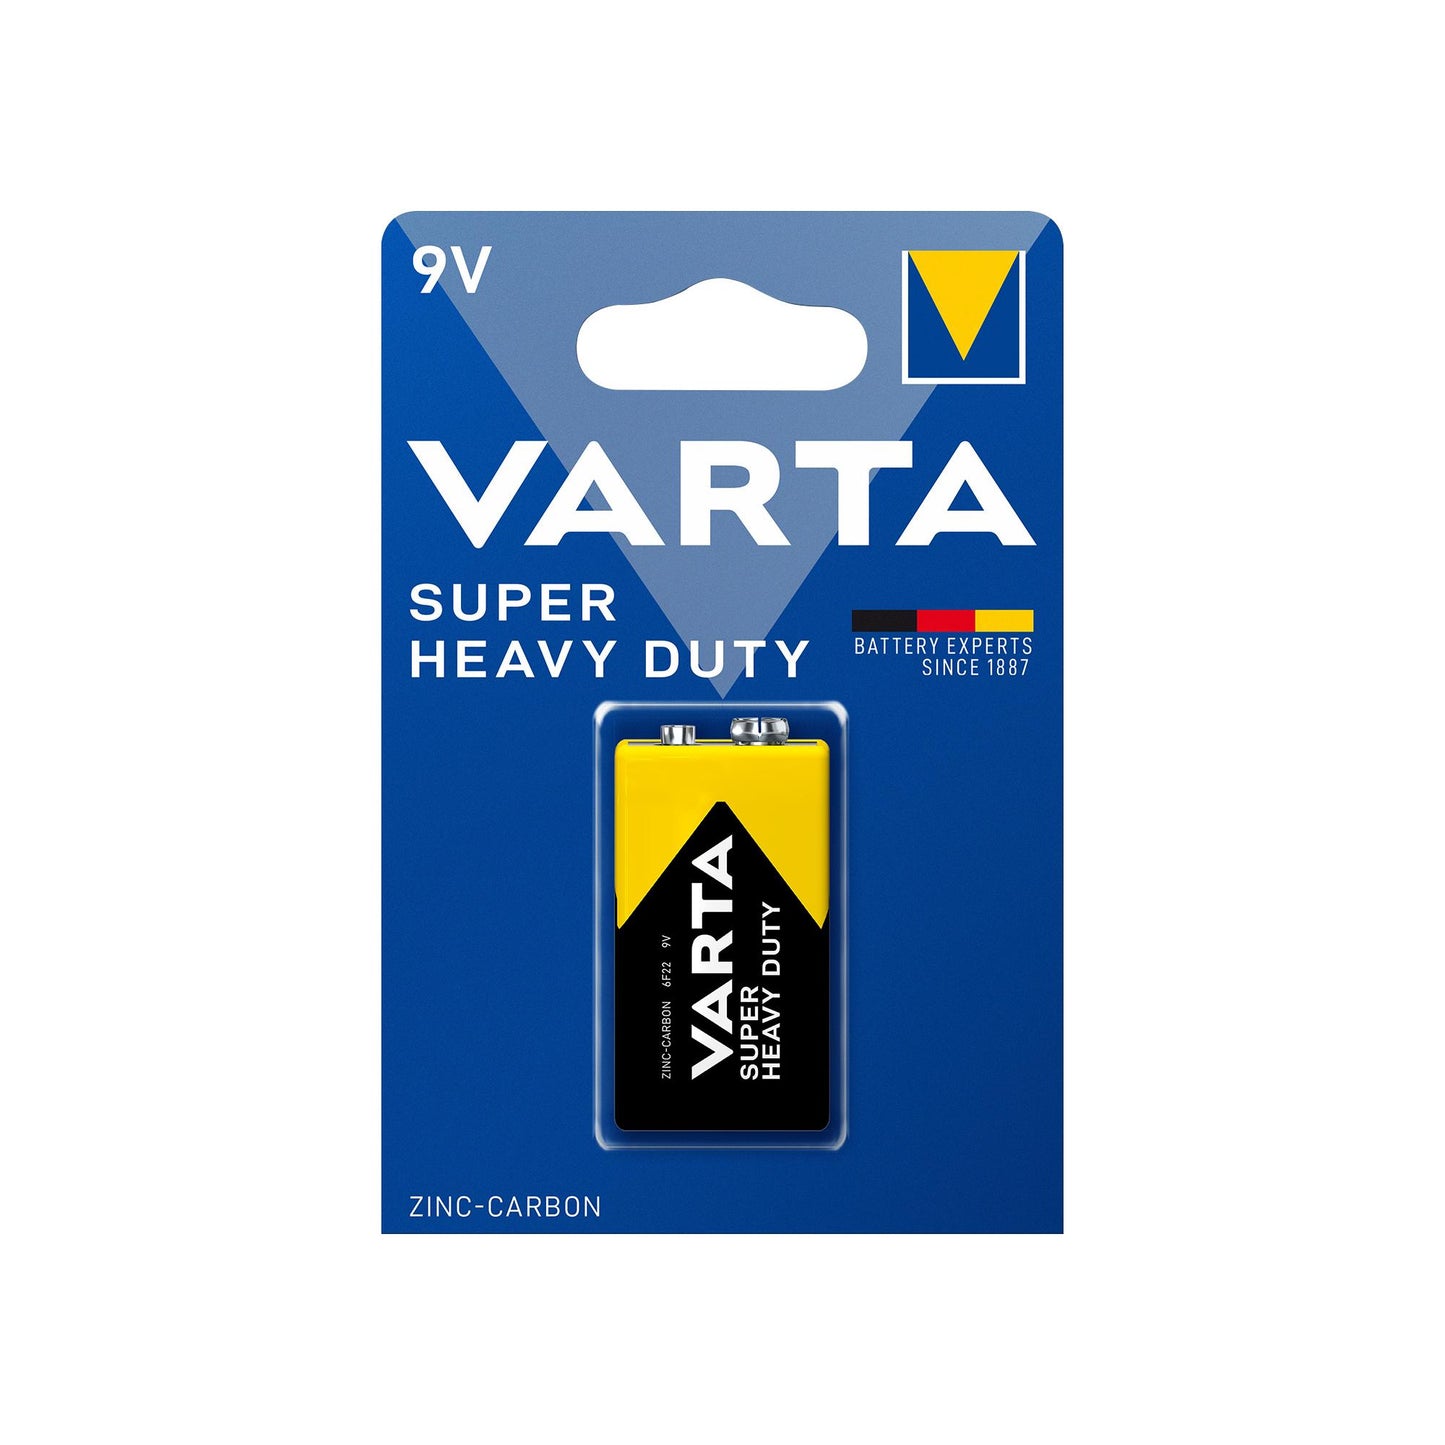 VARTA Batterie Zink-Kohle E-Block 6F22, 9V Superlife, Retail Blister (1-Pack)